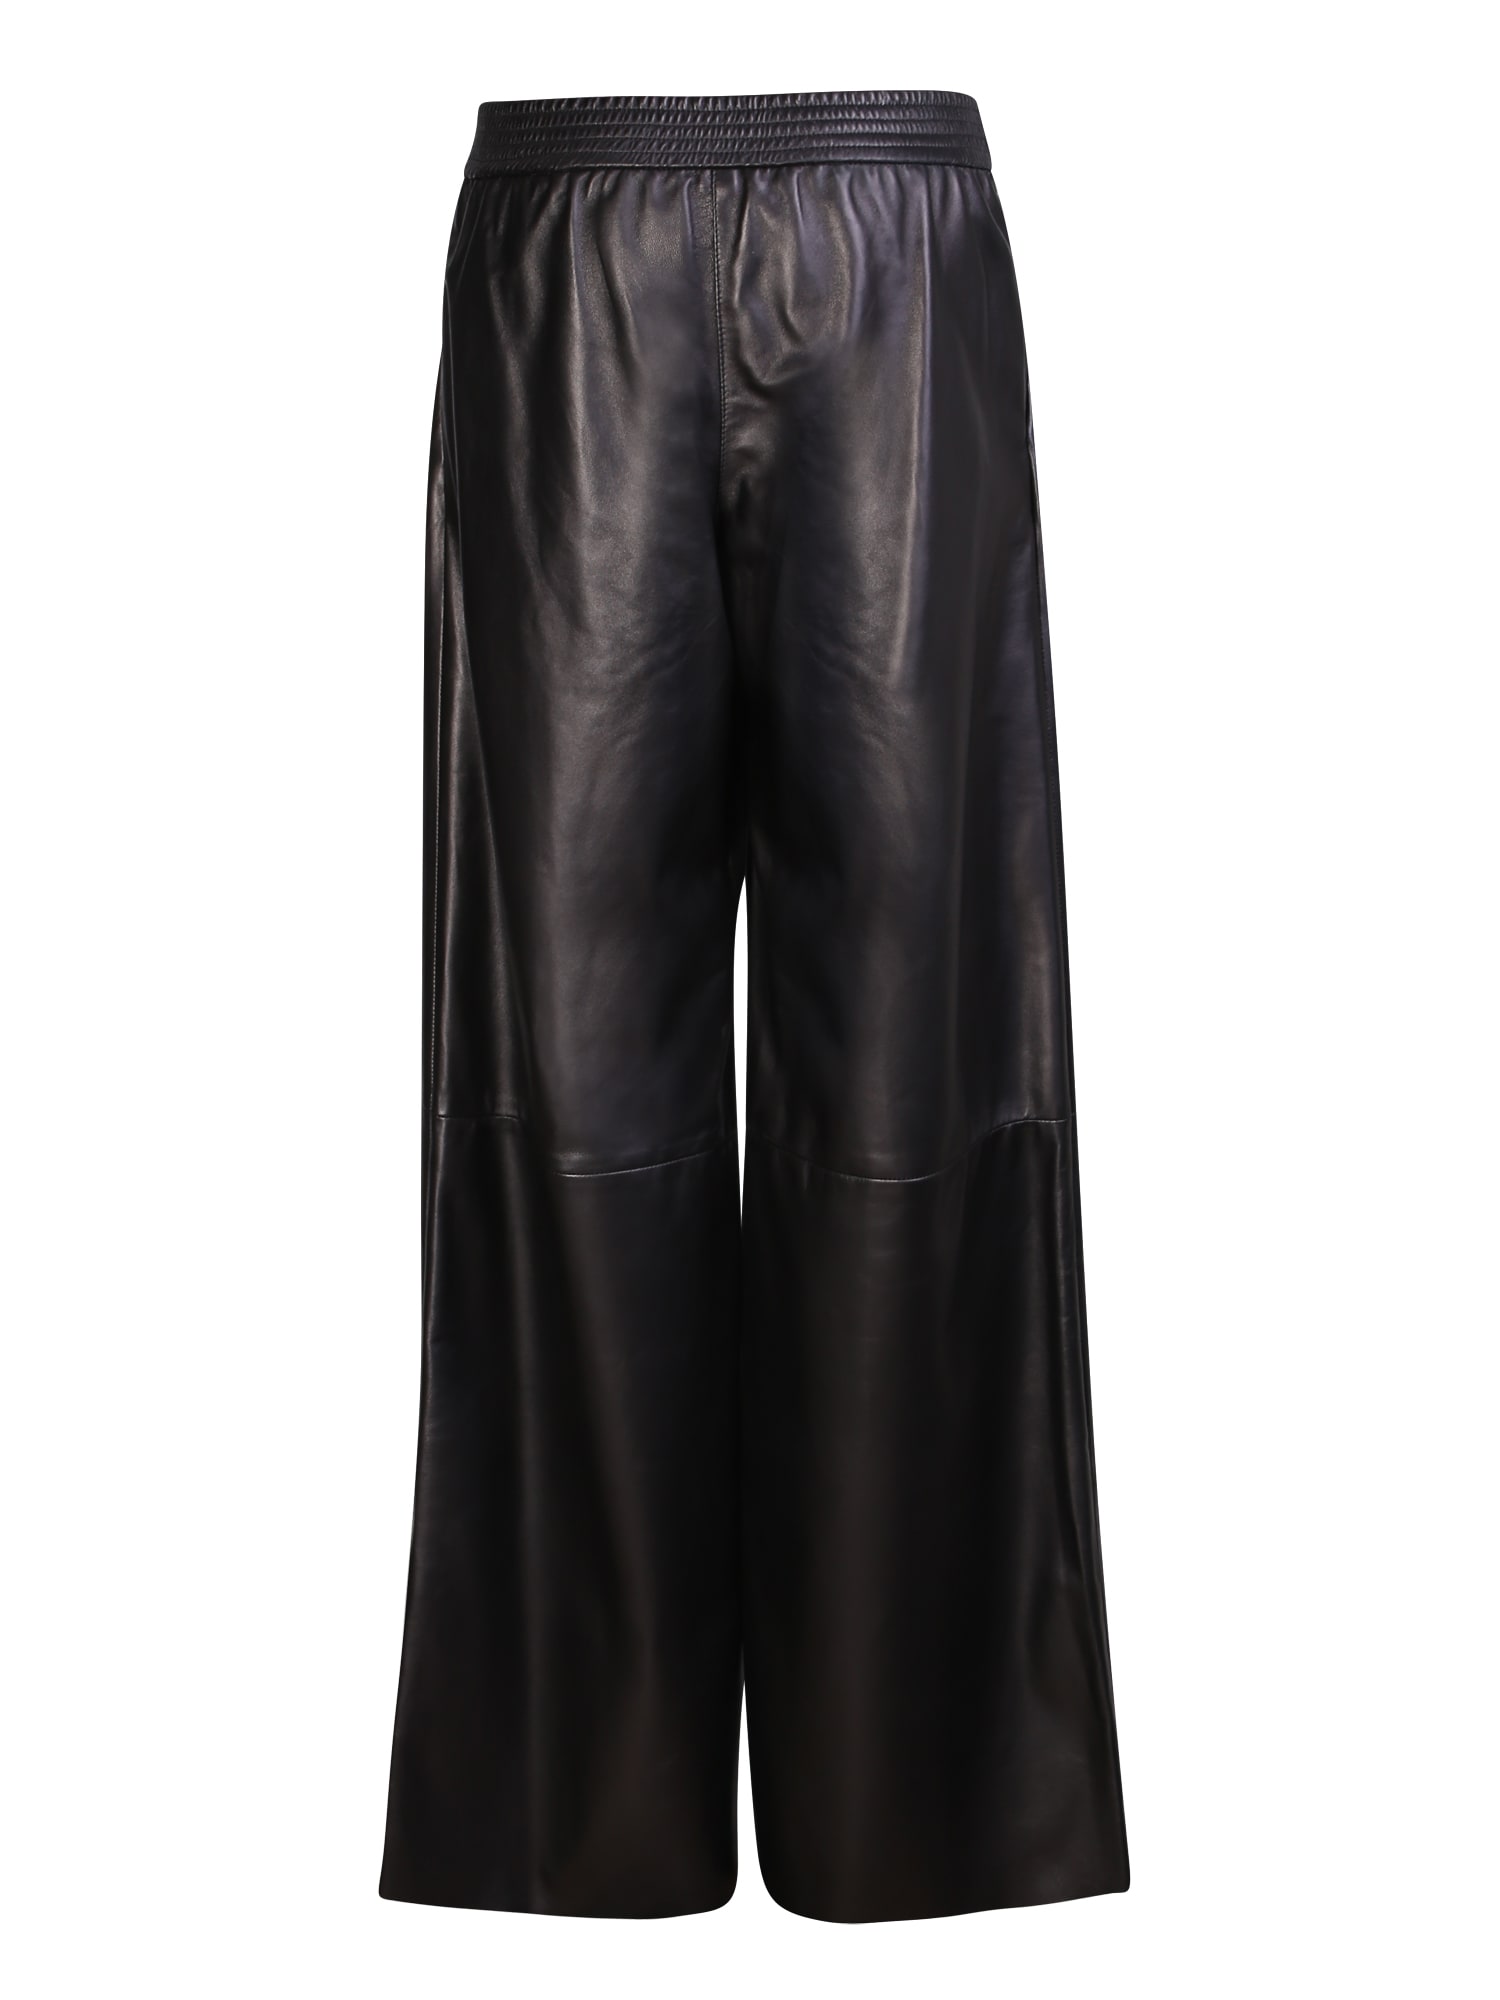 Shop Drome Black Leather Trousers